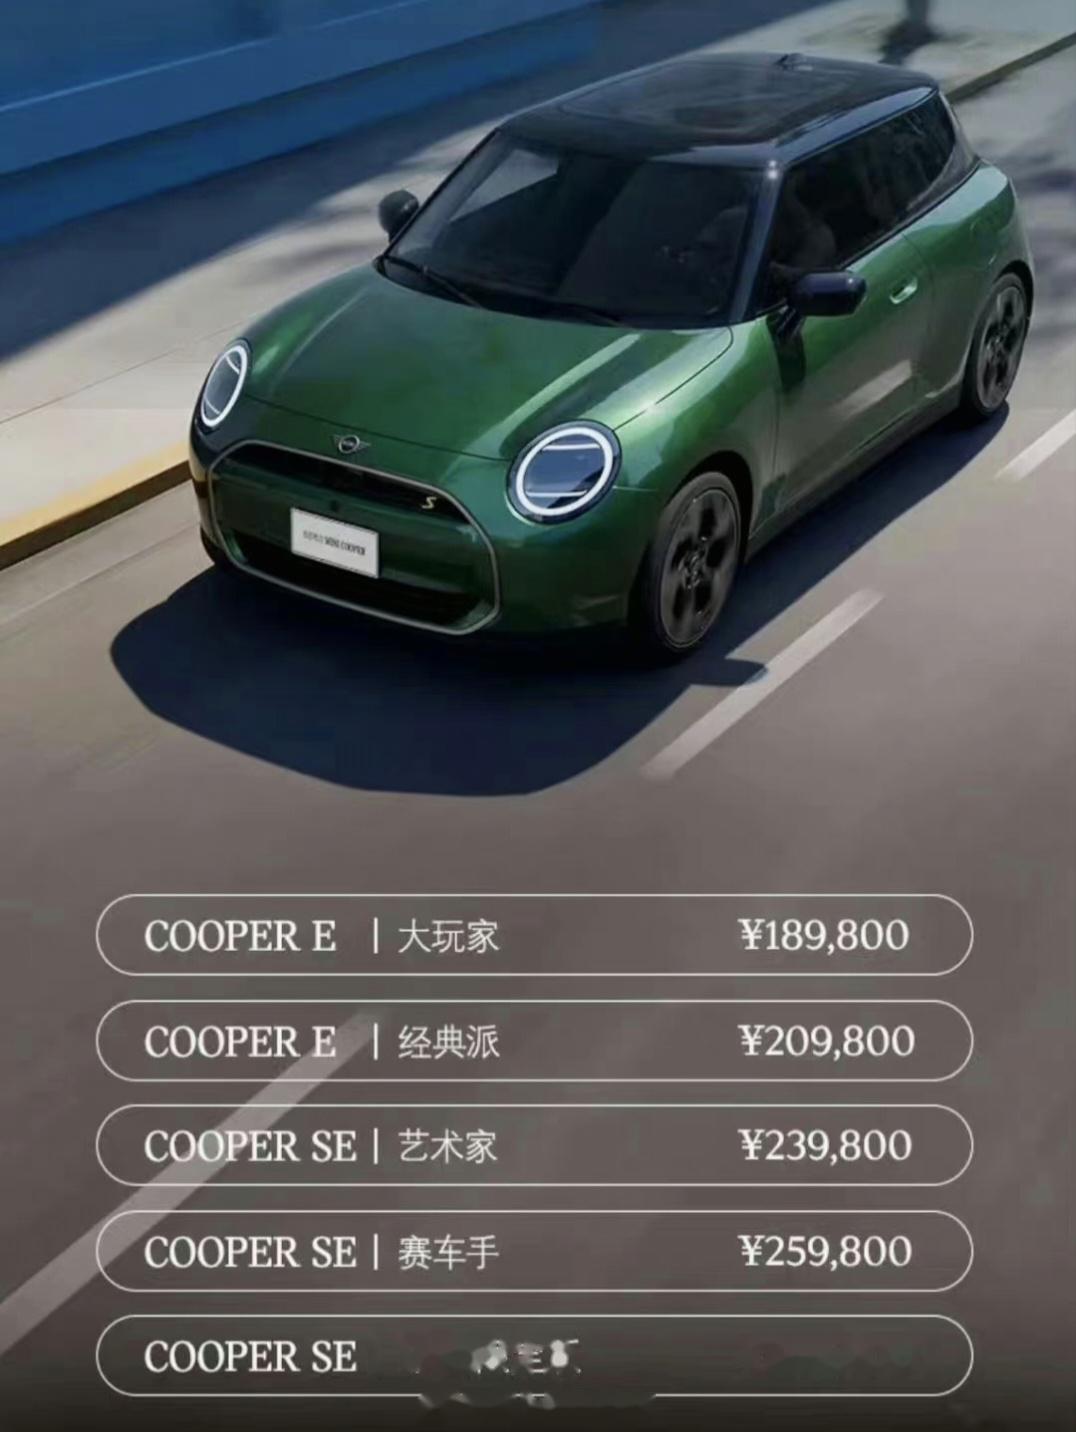 看到国产mini cooper s 的正式售价,才知道极氪汽车是把豪华品牌给